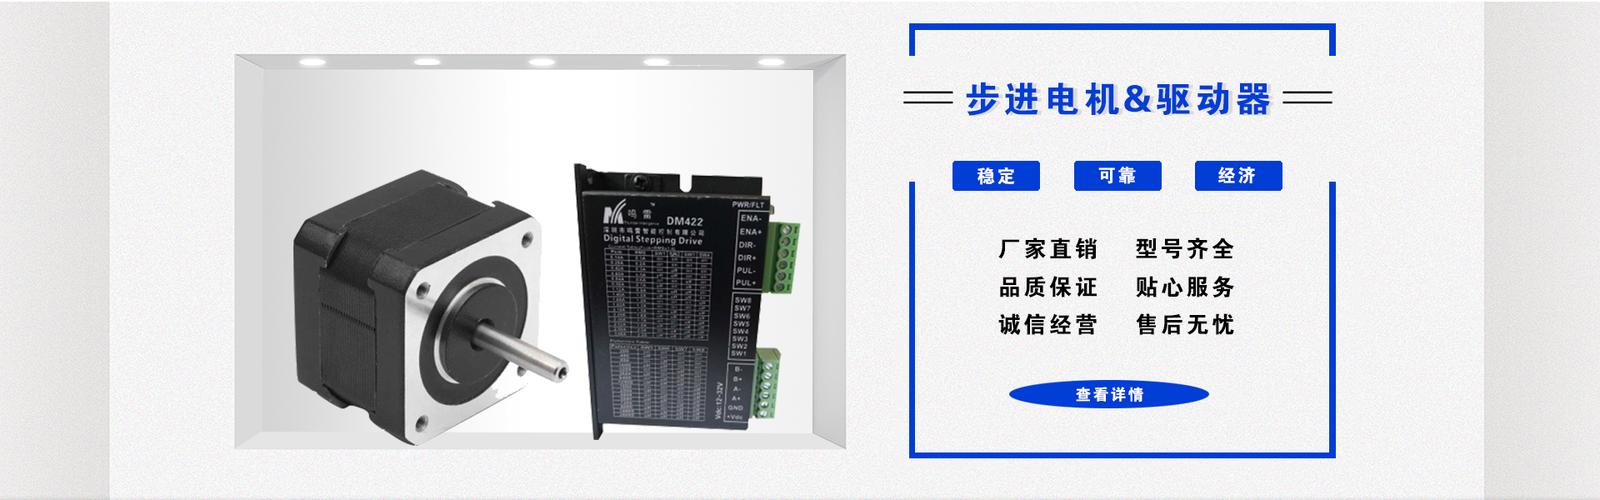 深圳市鸣雷智能控制专注于精密微电机,驱动控制系统